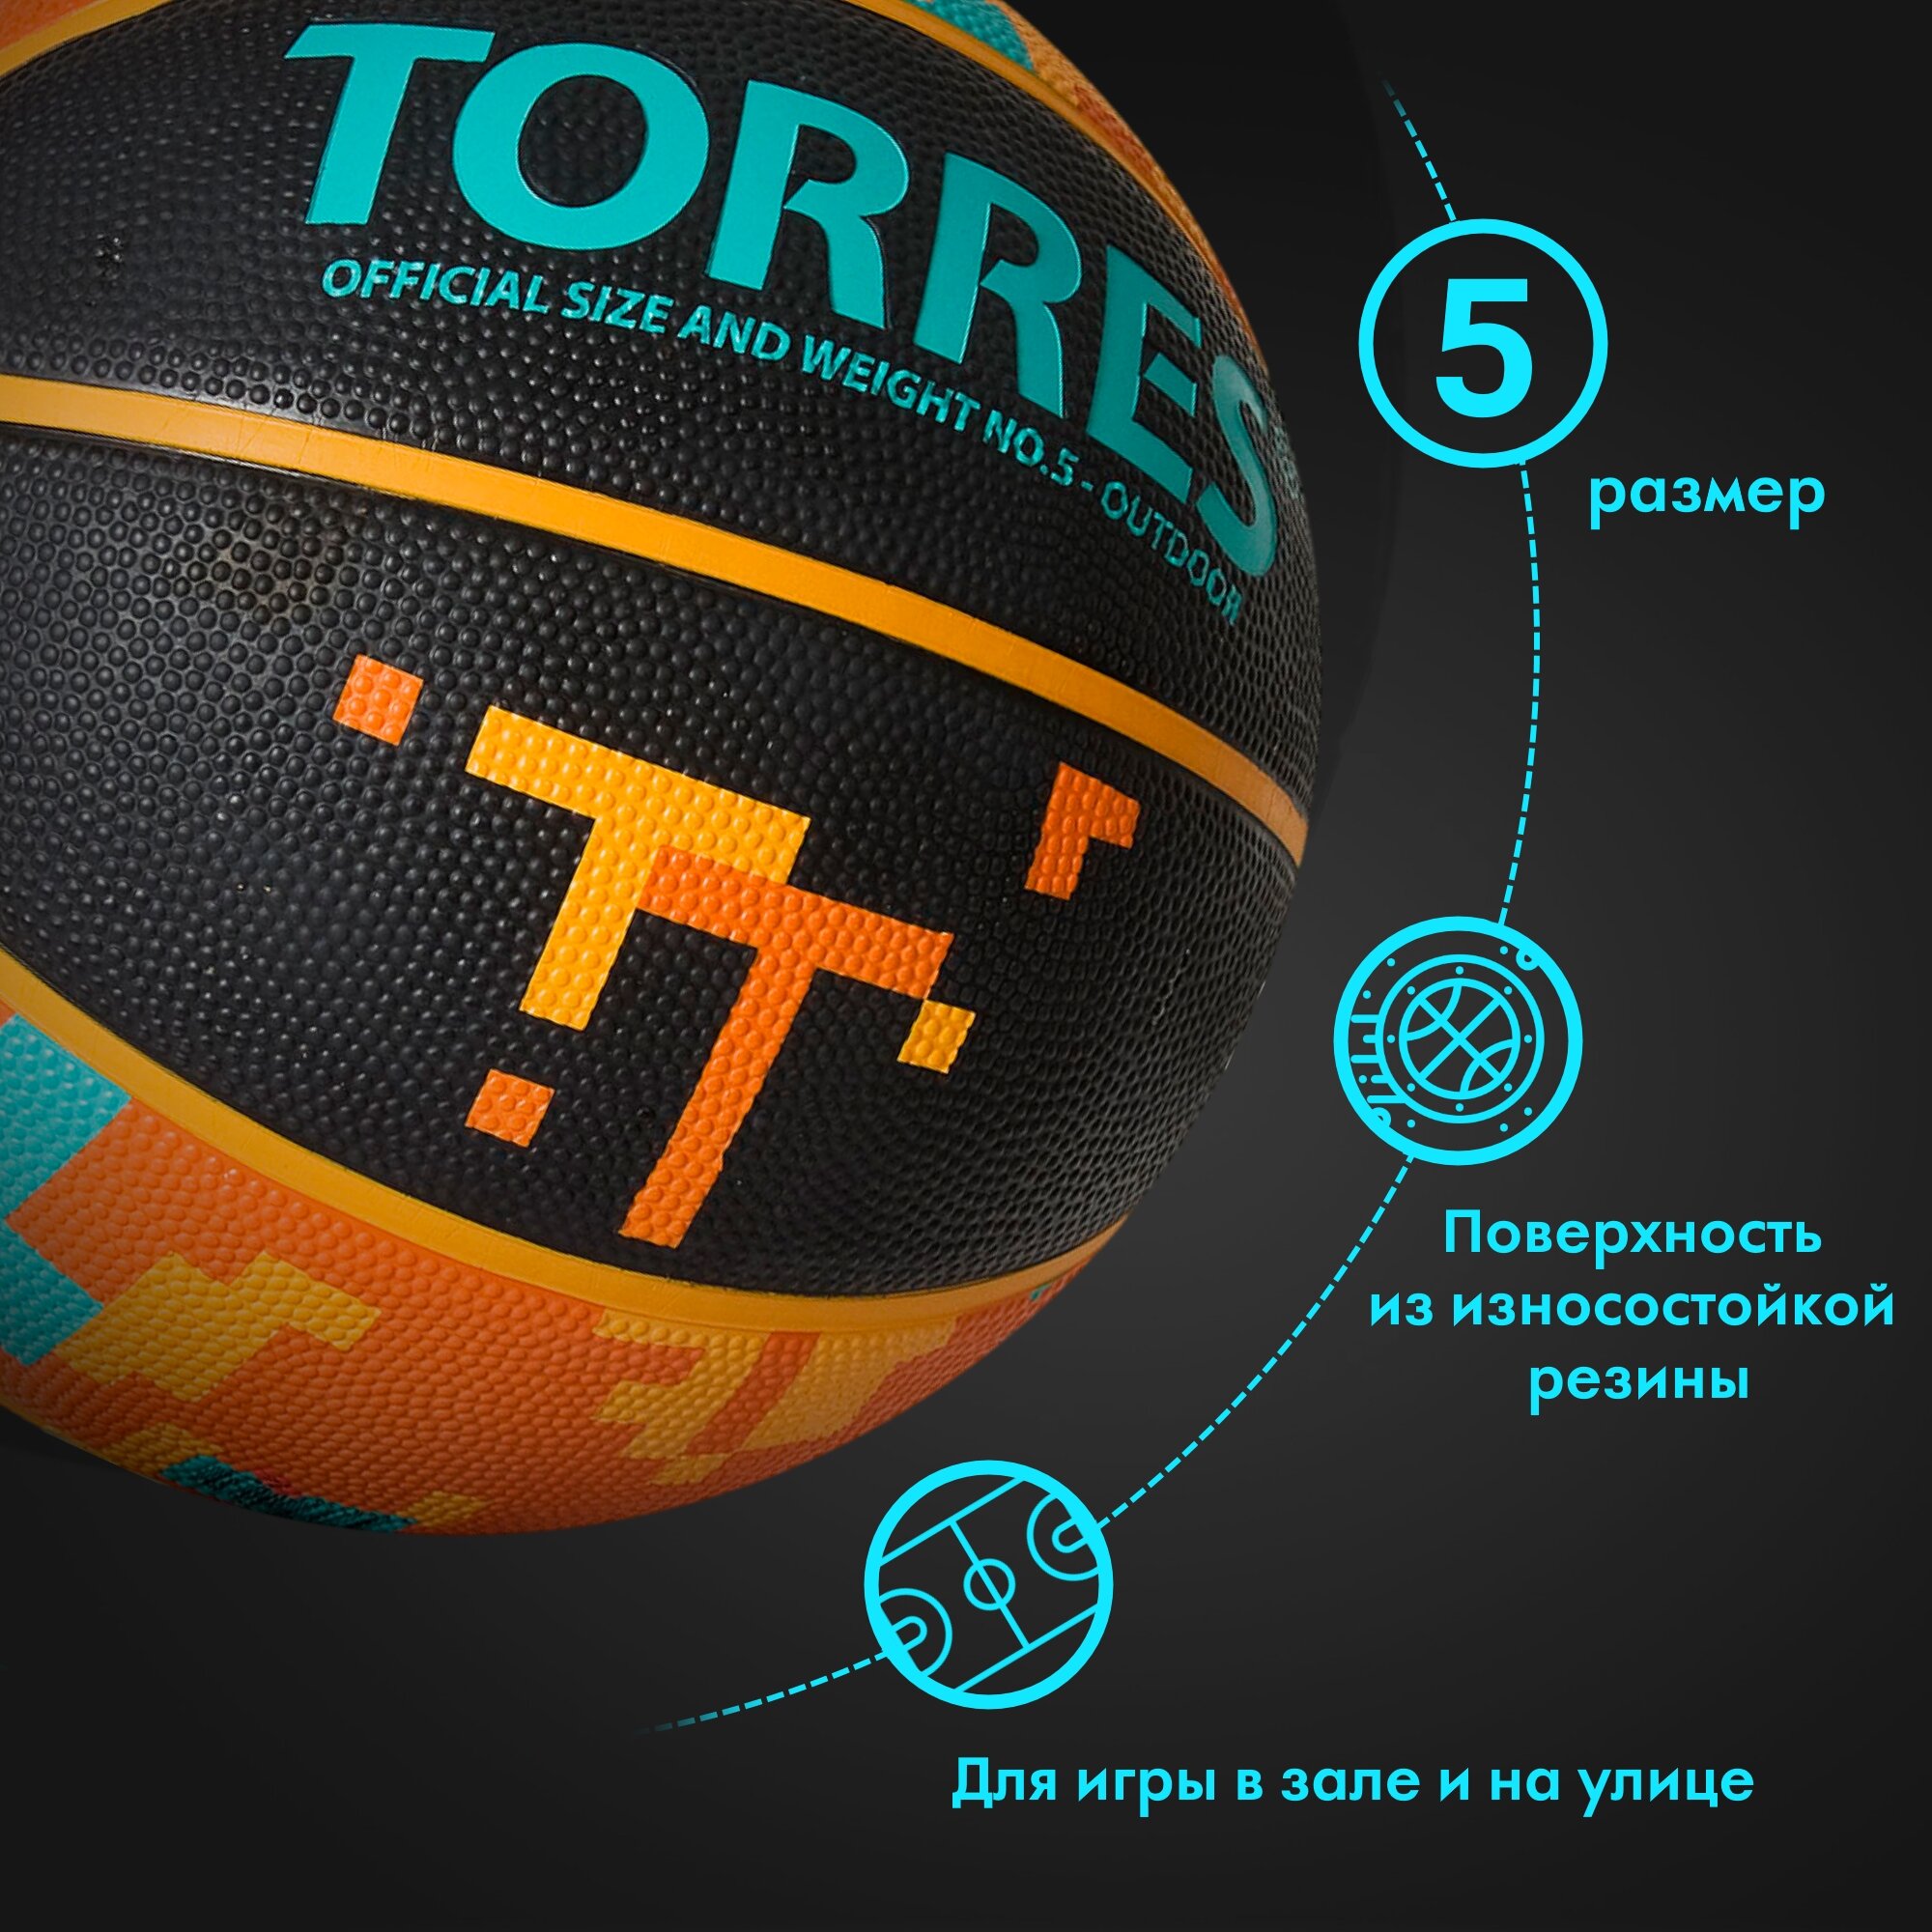 Мяч баскетбольный TORRES TТ B02125, размер 5